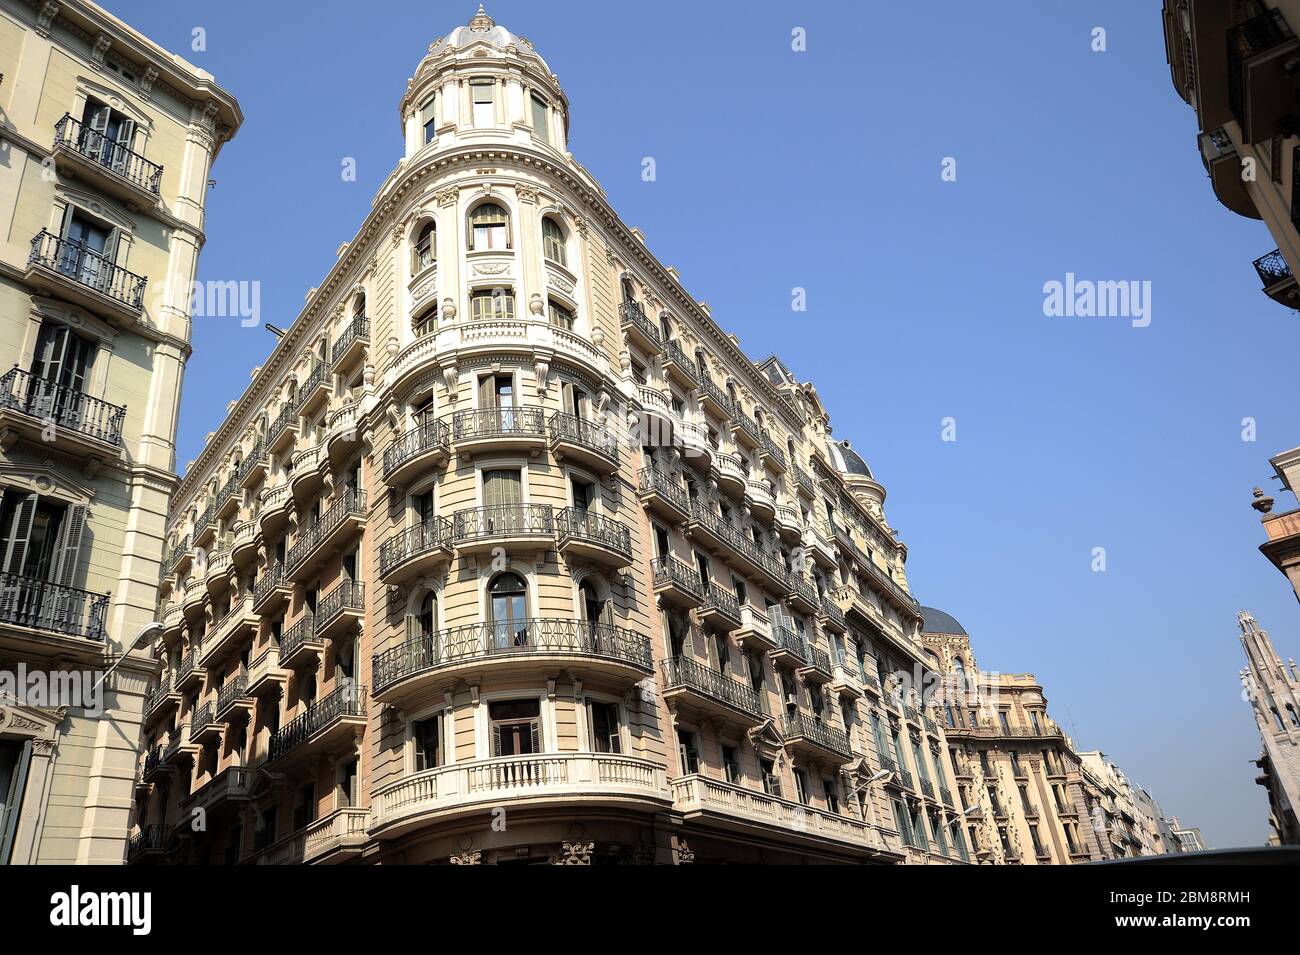 Barcelona. Along the Via Laietana. Stock Photo